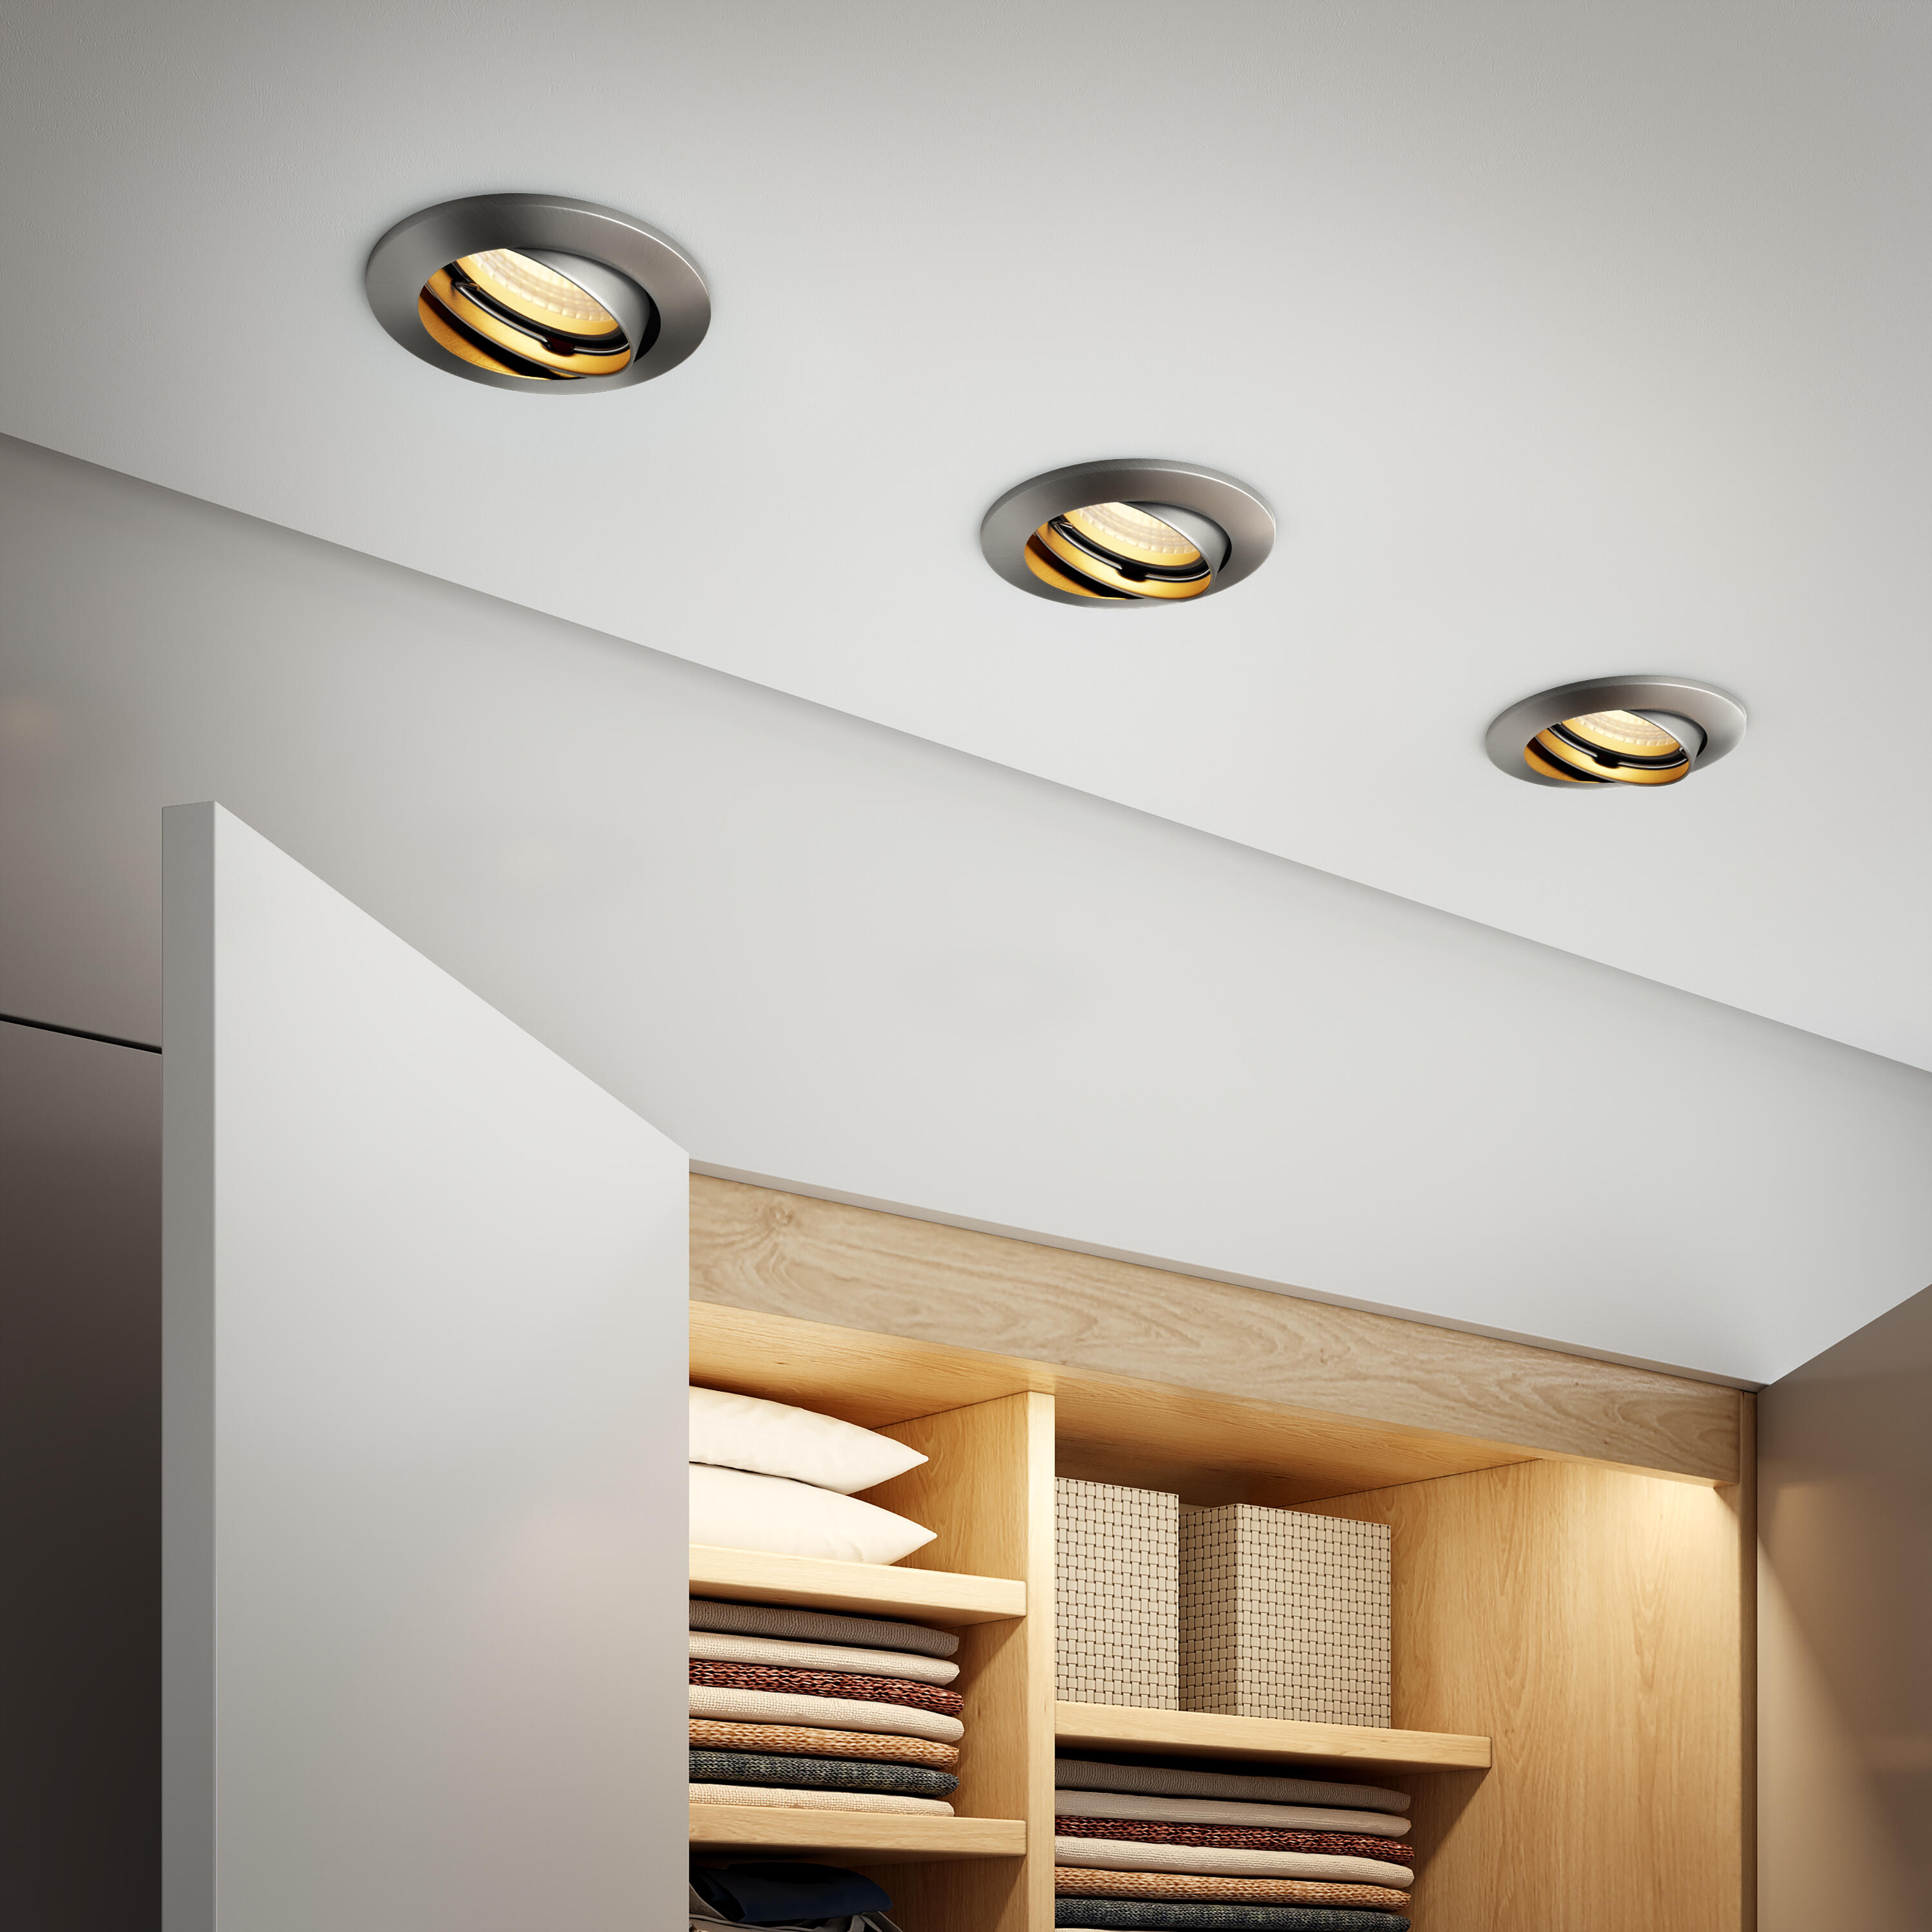 Cómo elegir el foco ideal para iluminar correctamente mi hogar?